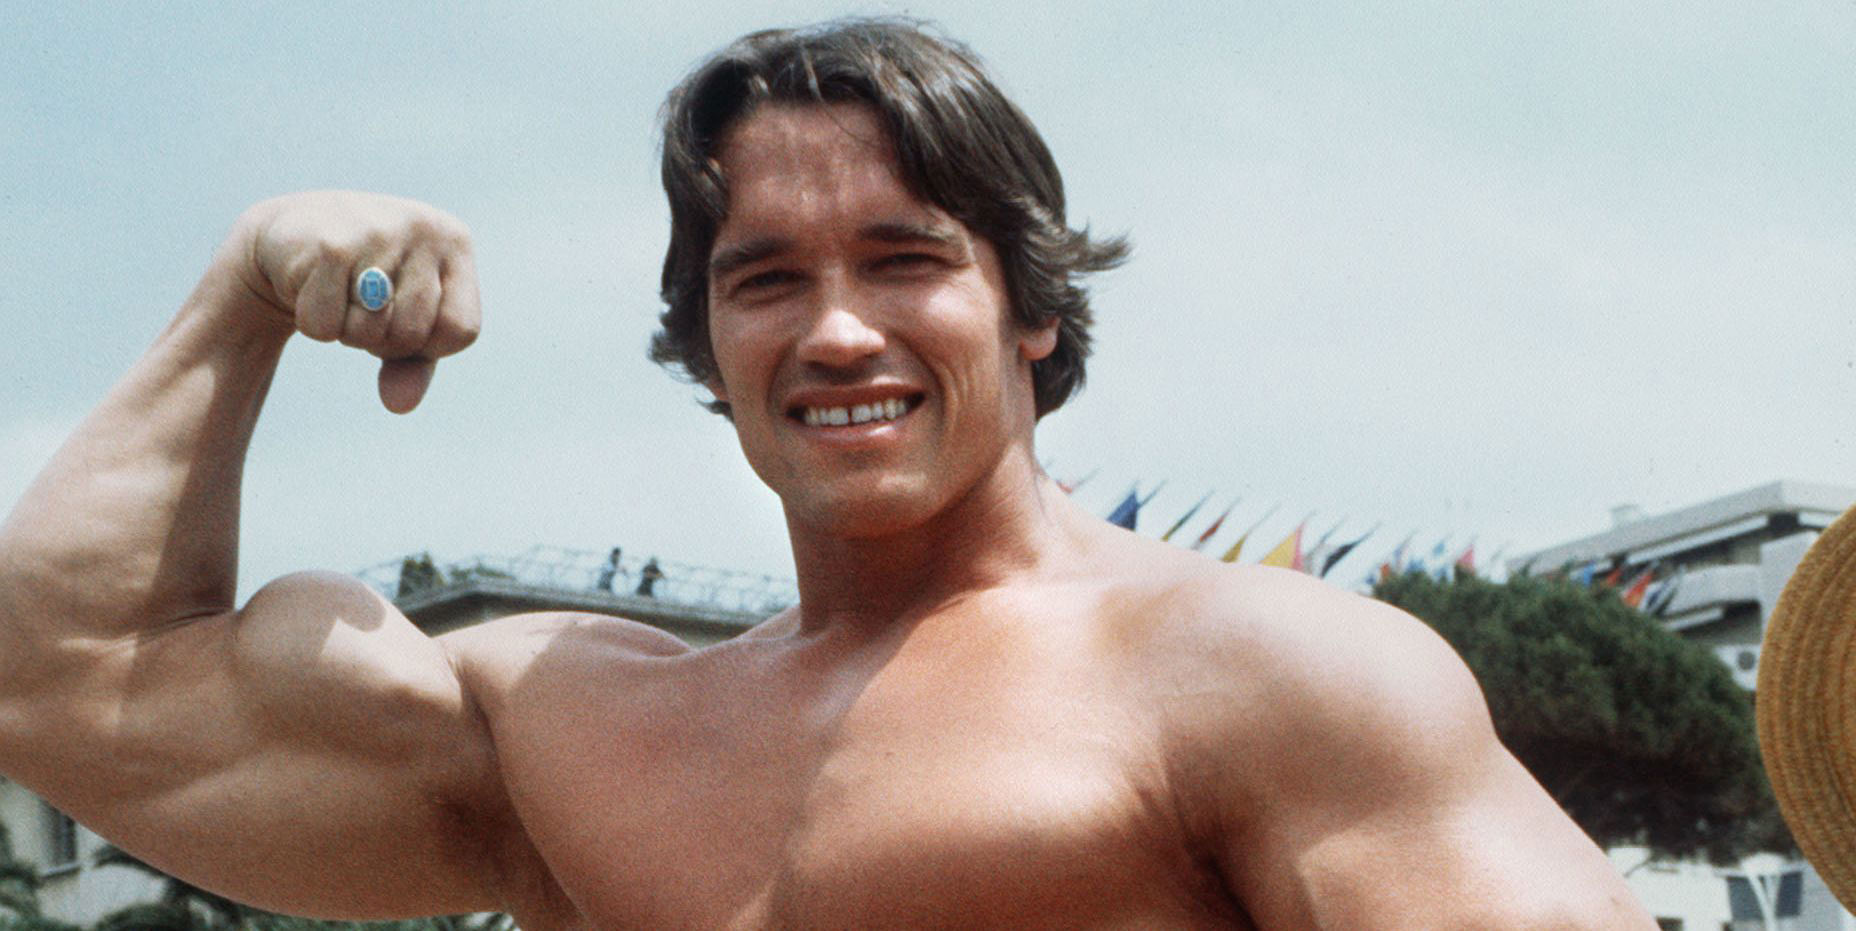 Arnold Schwarzenegger comparte un consejo para mantener la